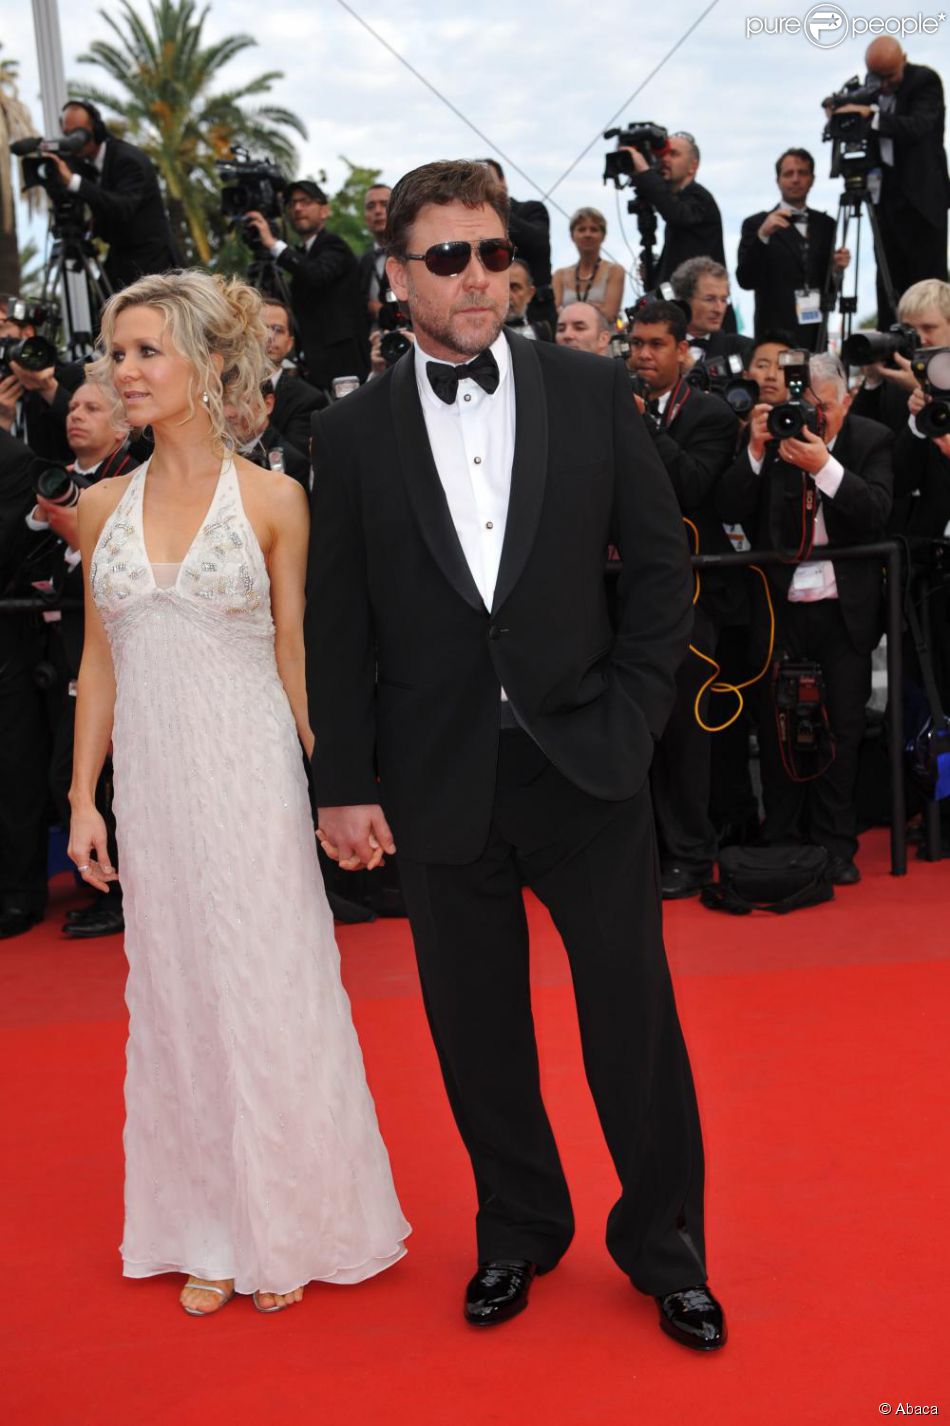 Russell Crowe au côté de son épouse lors du 63ème Festival de Cannes en mai 2010